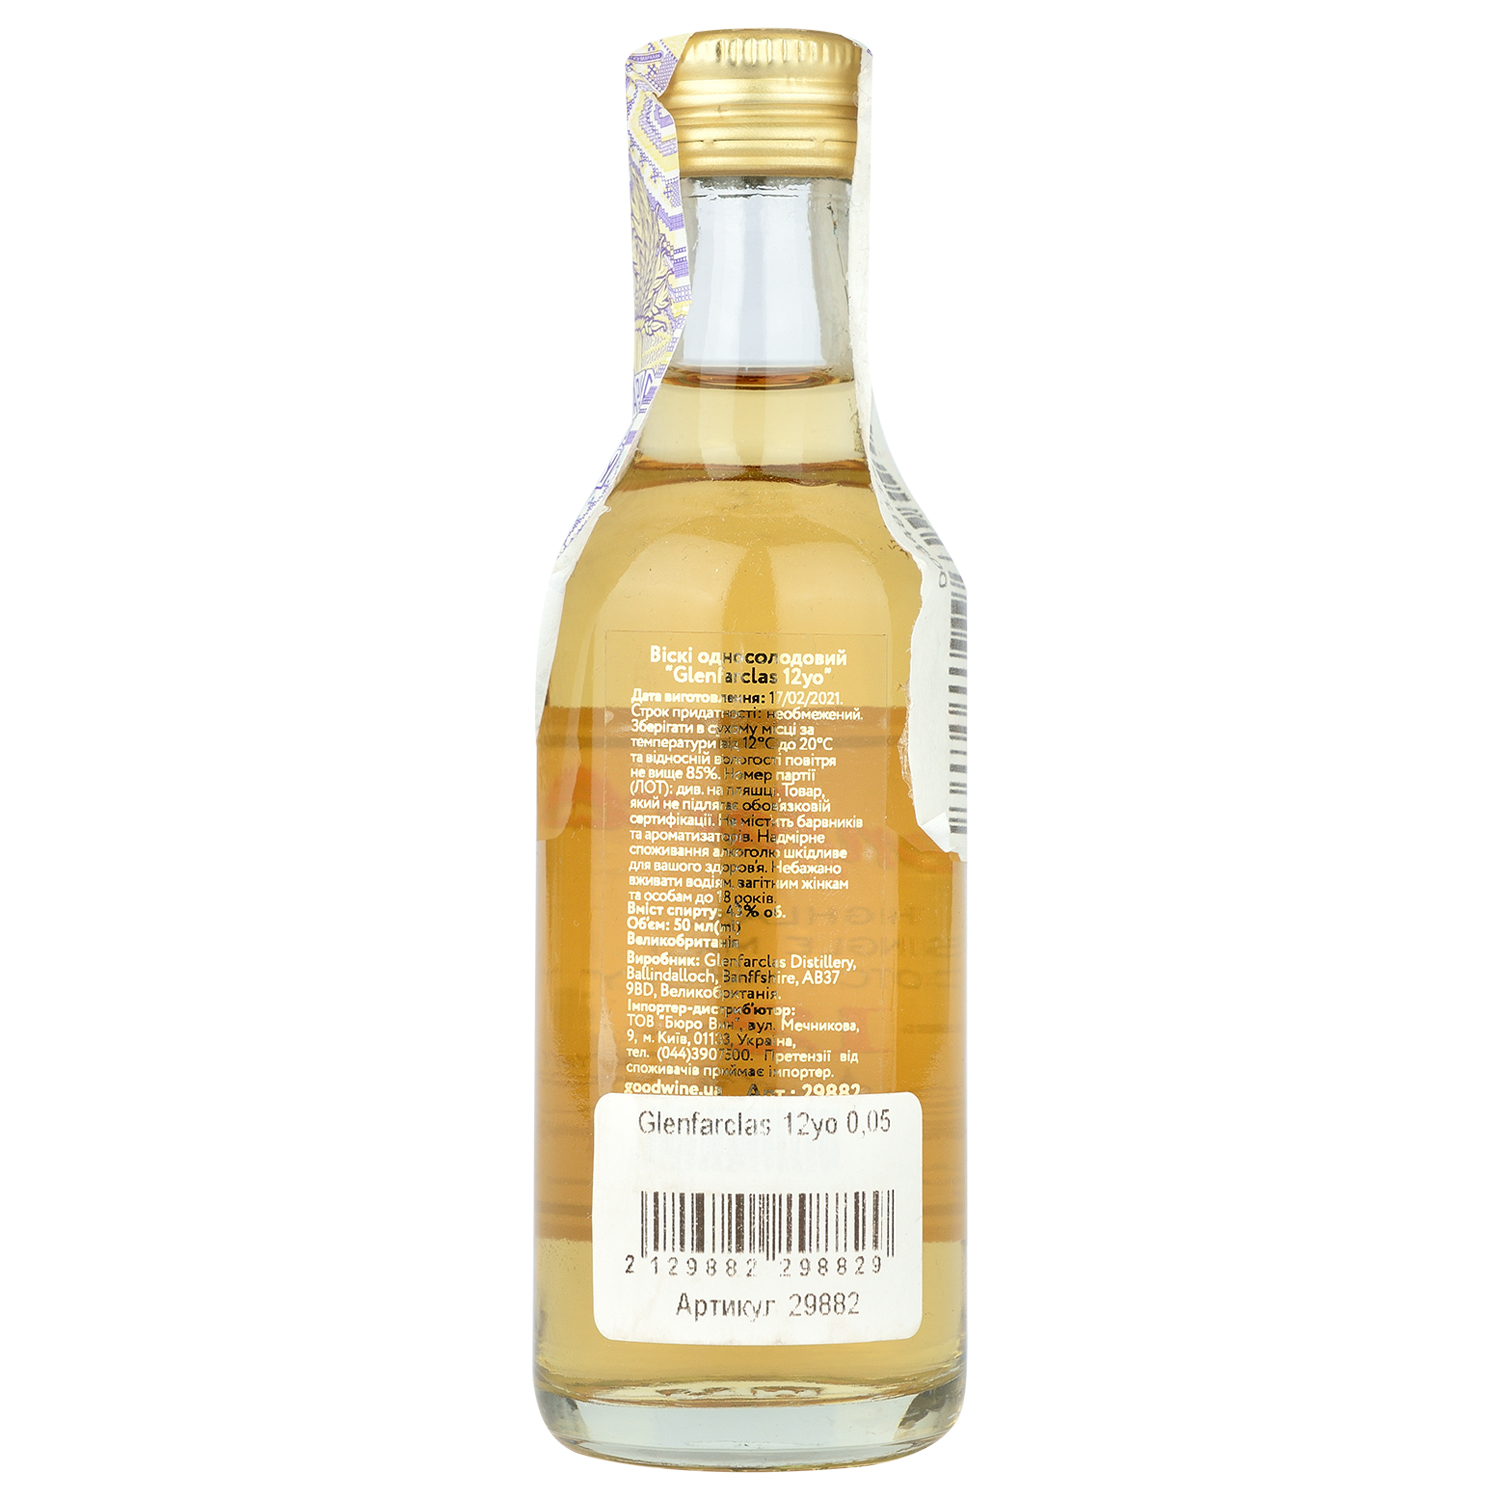 Віскі Glenfarclas Single Malt Scotch Whisky 12 yo, 43%, 0,05 л - фото 2